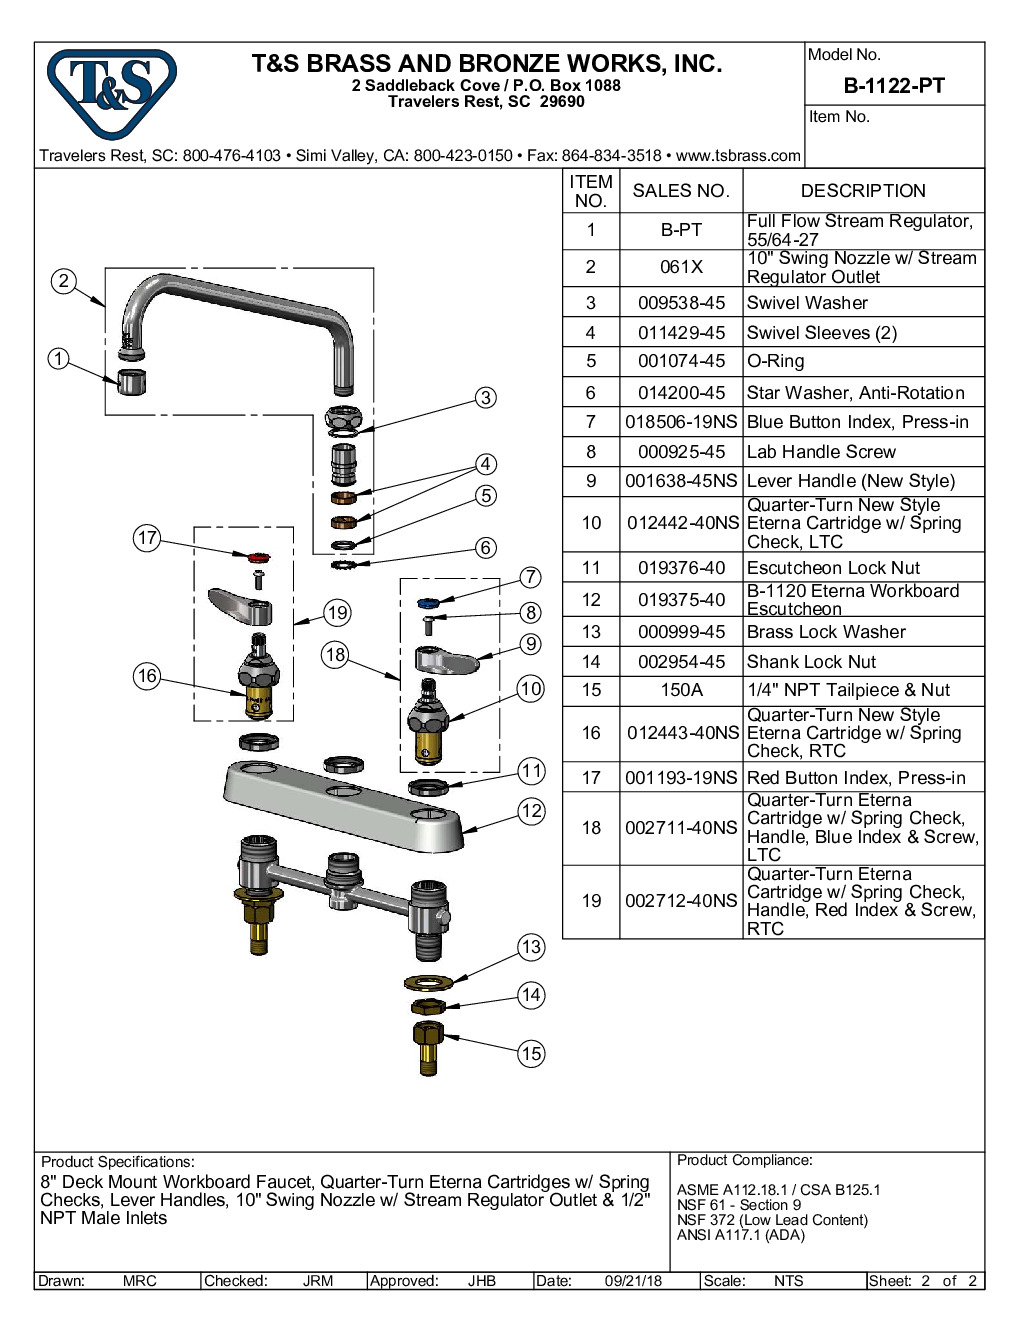 T&S Brass B-1122-PT Deck Mount Faucet